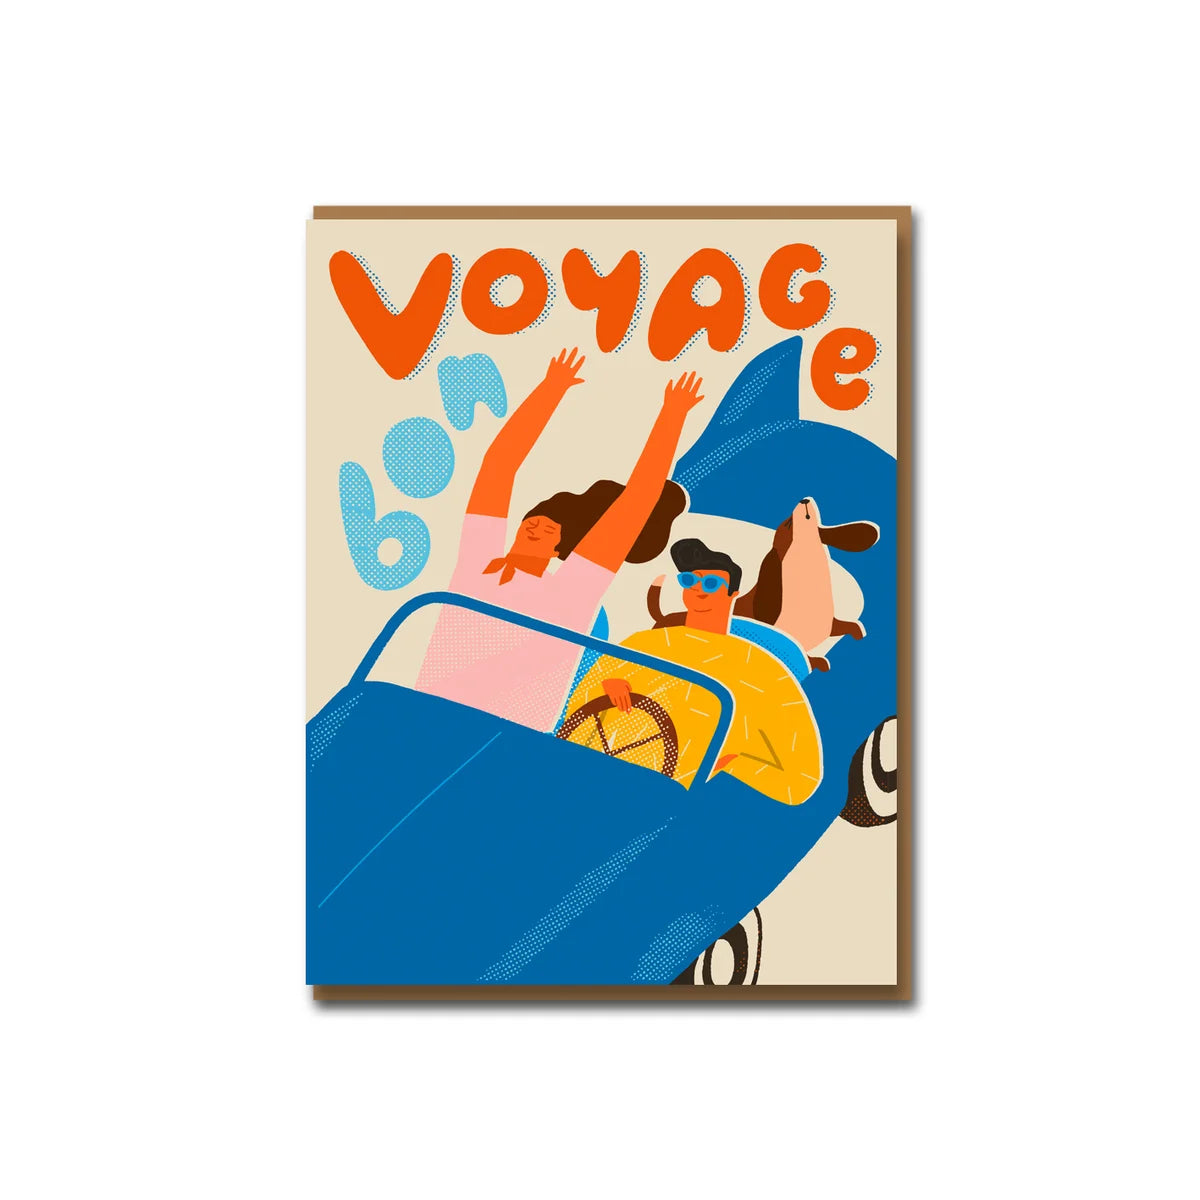 Bon Voyage Greeting Card